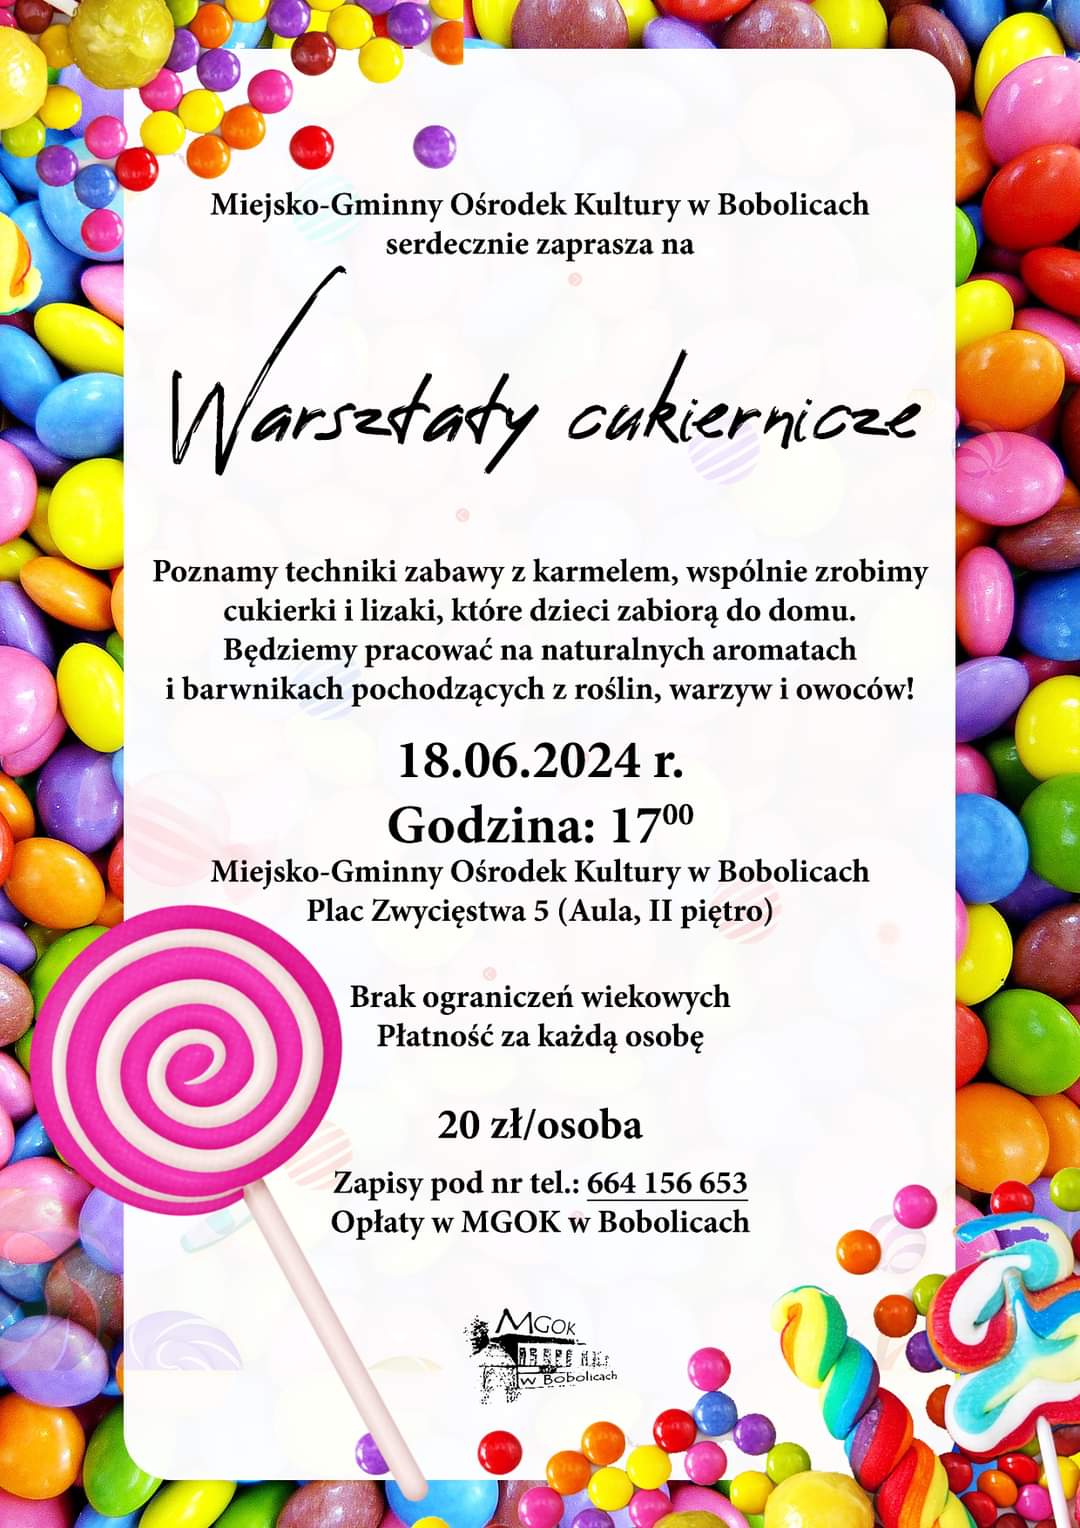 Plakat z zaproszeniem na warsztaty cukiernicze w Bobolicach 18 czerwca 2024